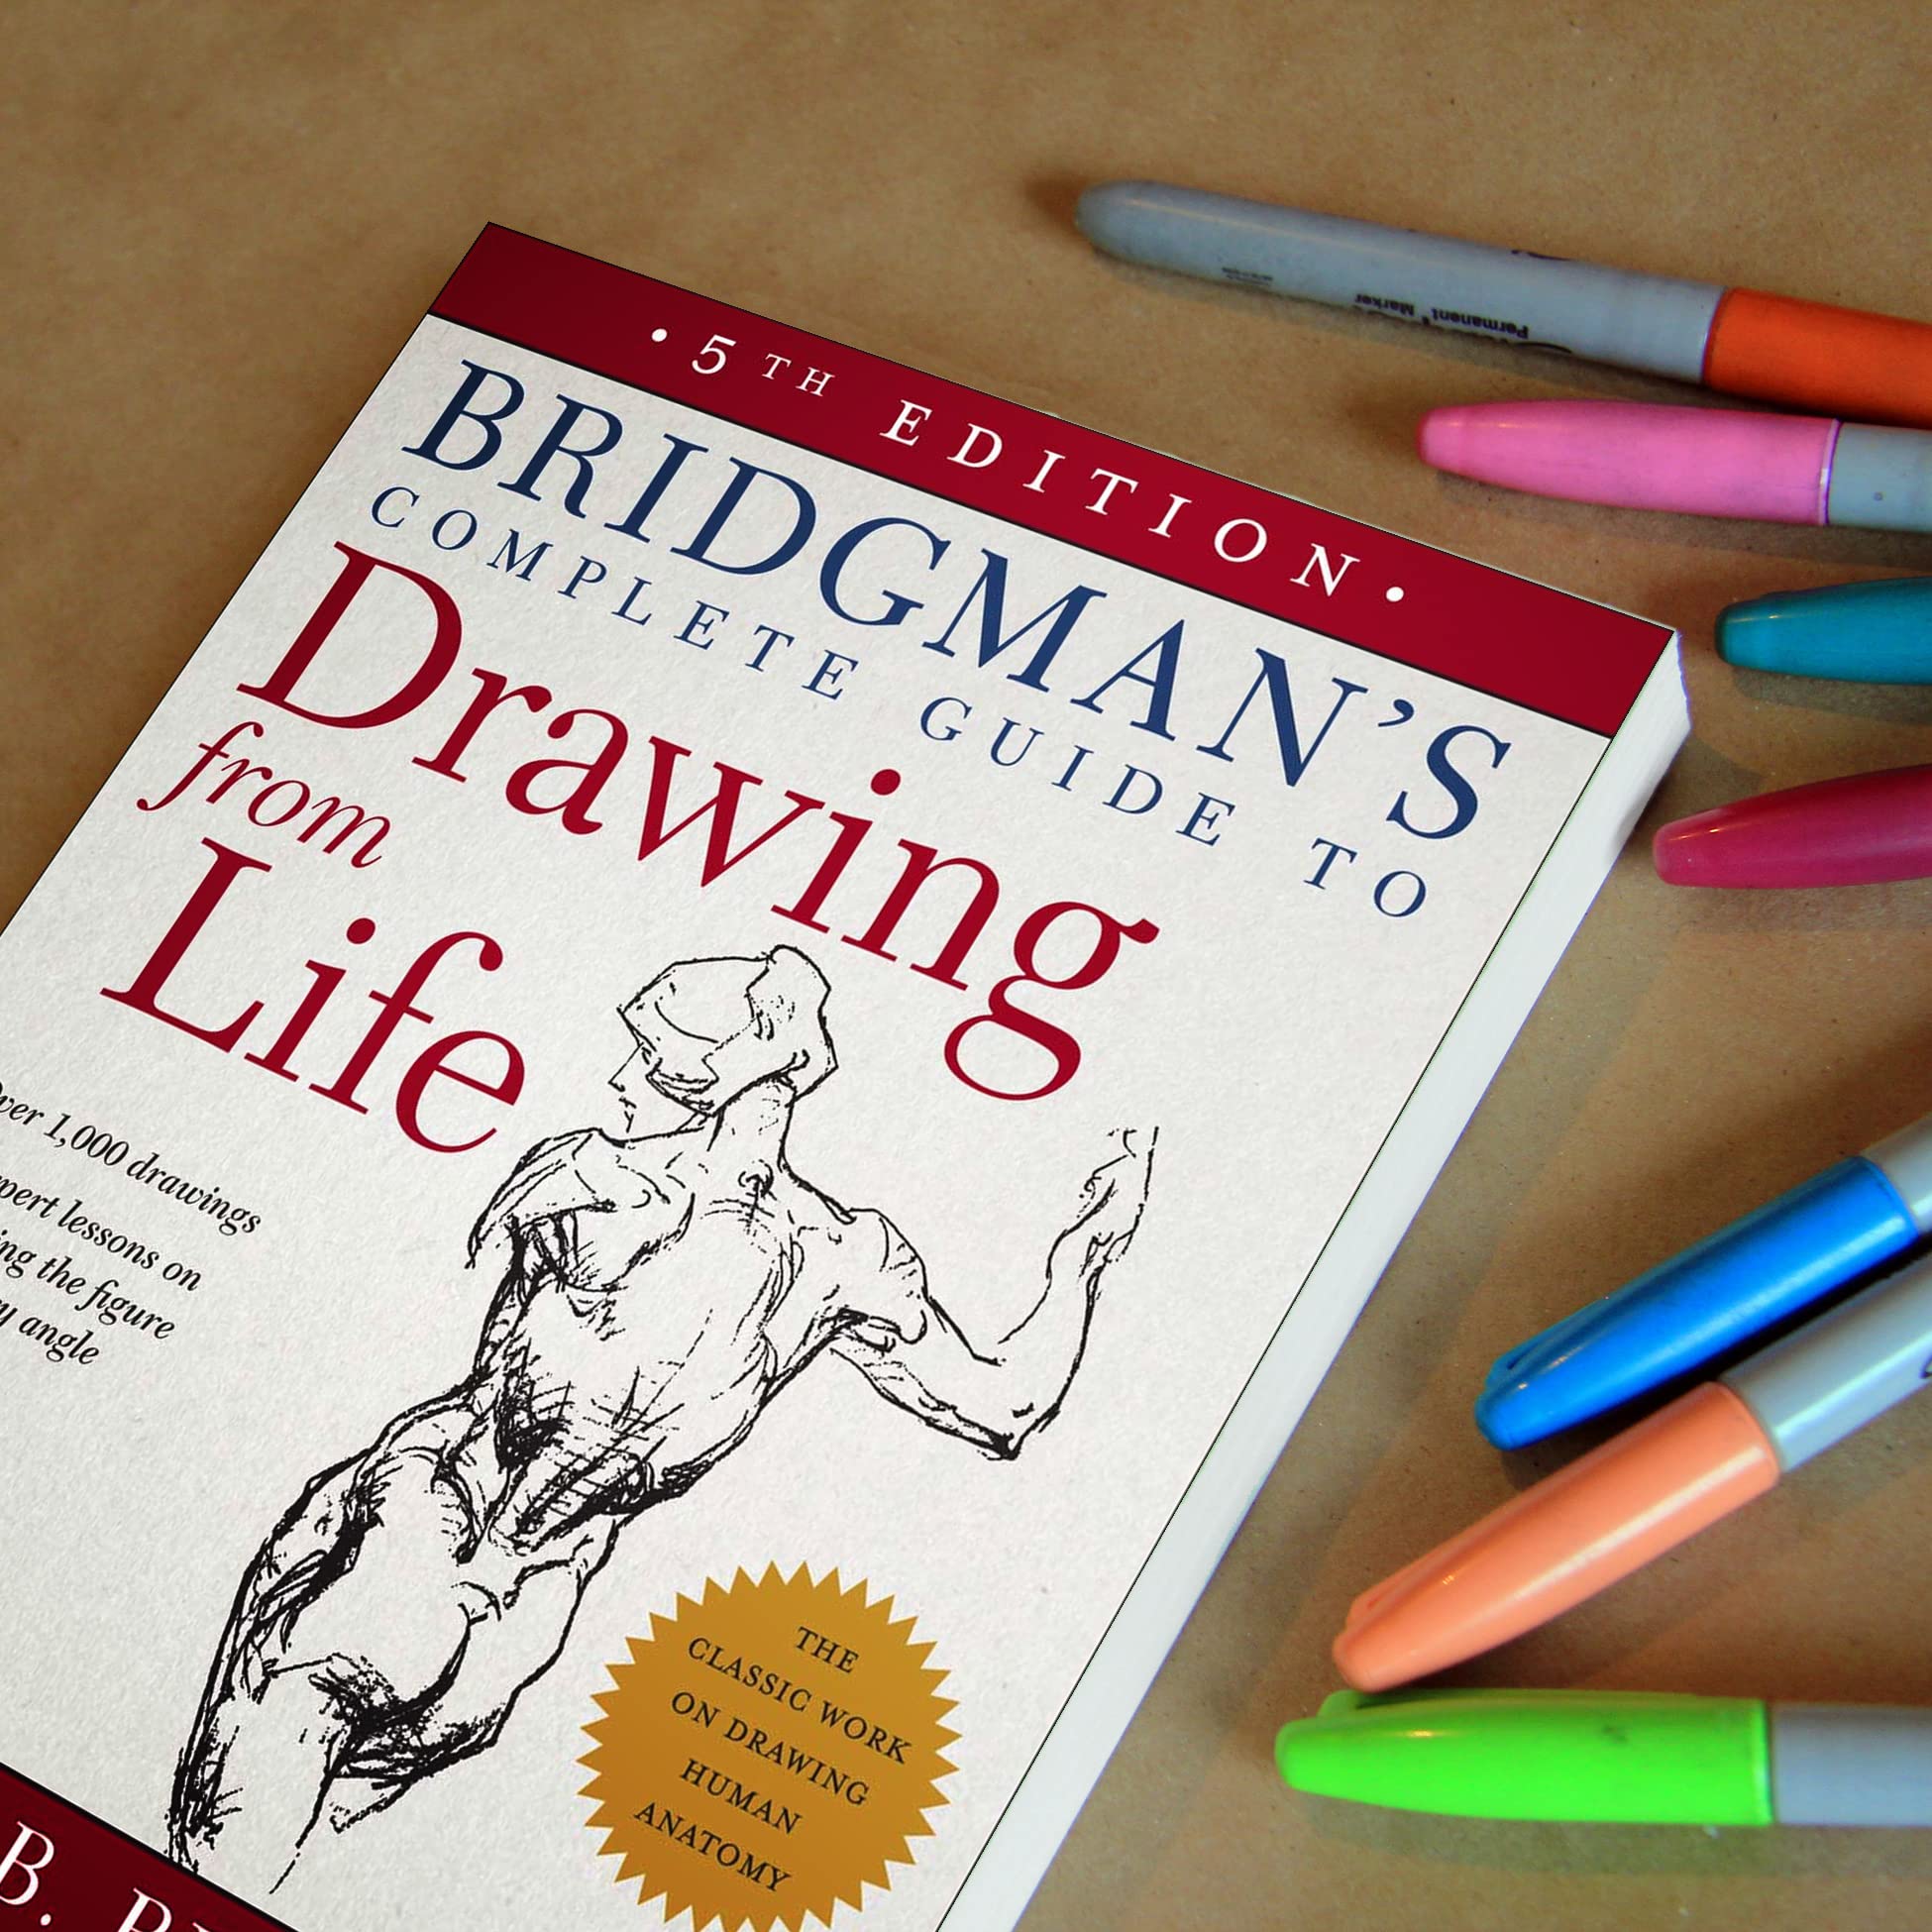 Mua Bridgman's Complete Guide to Drawing From Life trên Amazon Mỹ chính